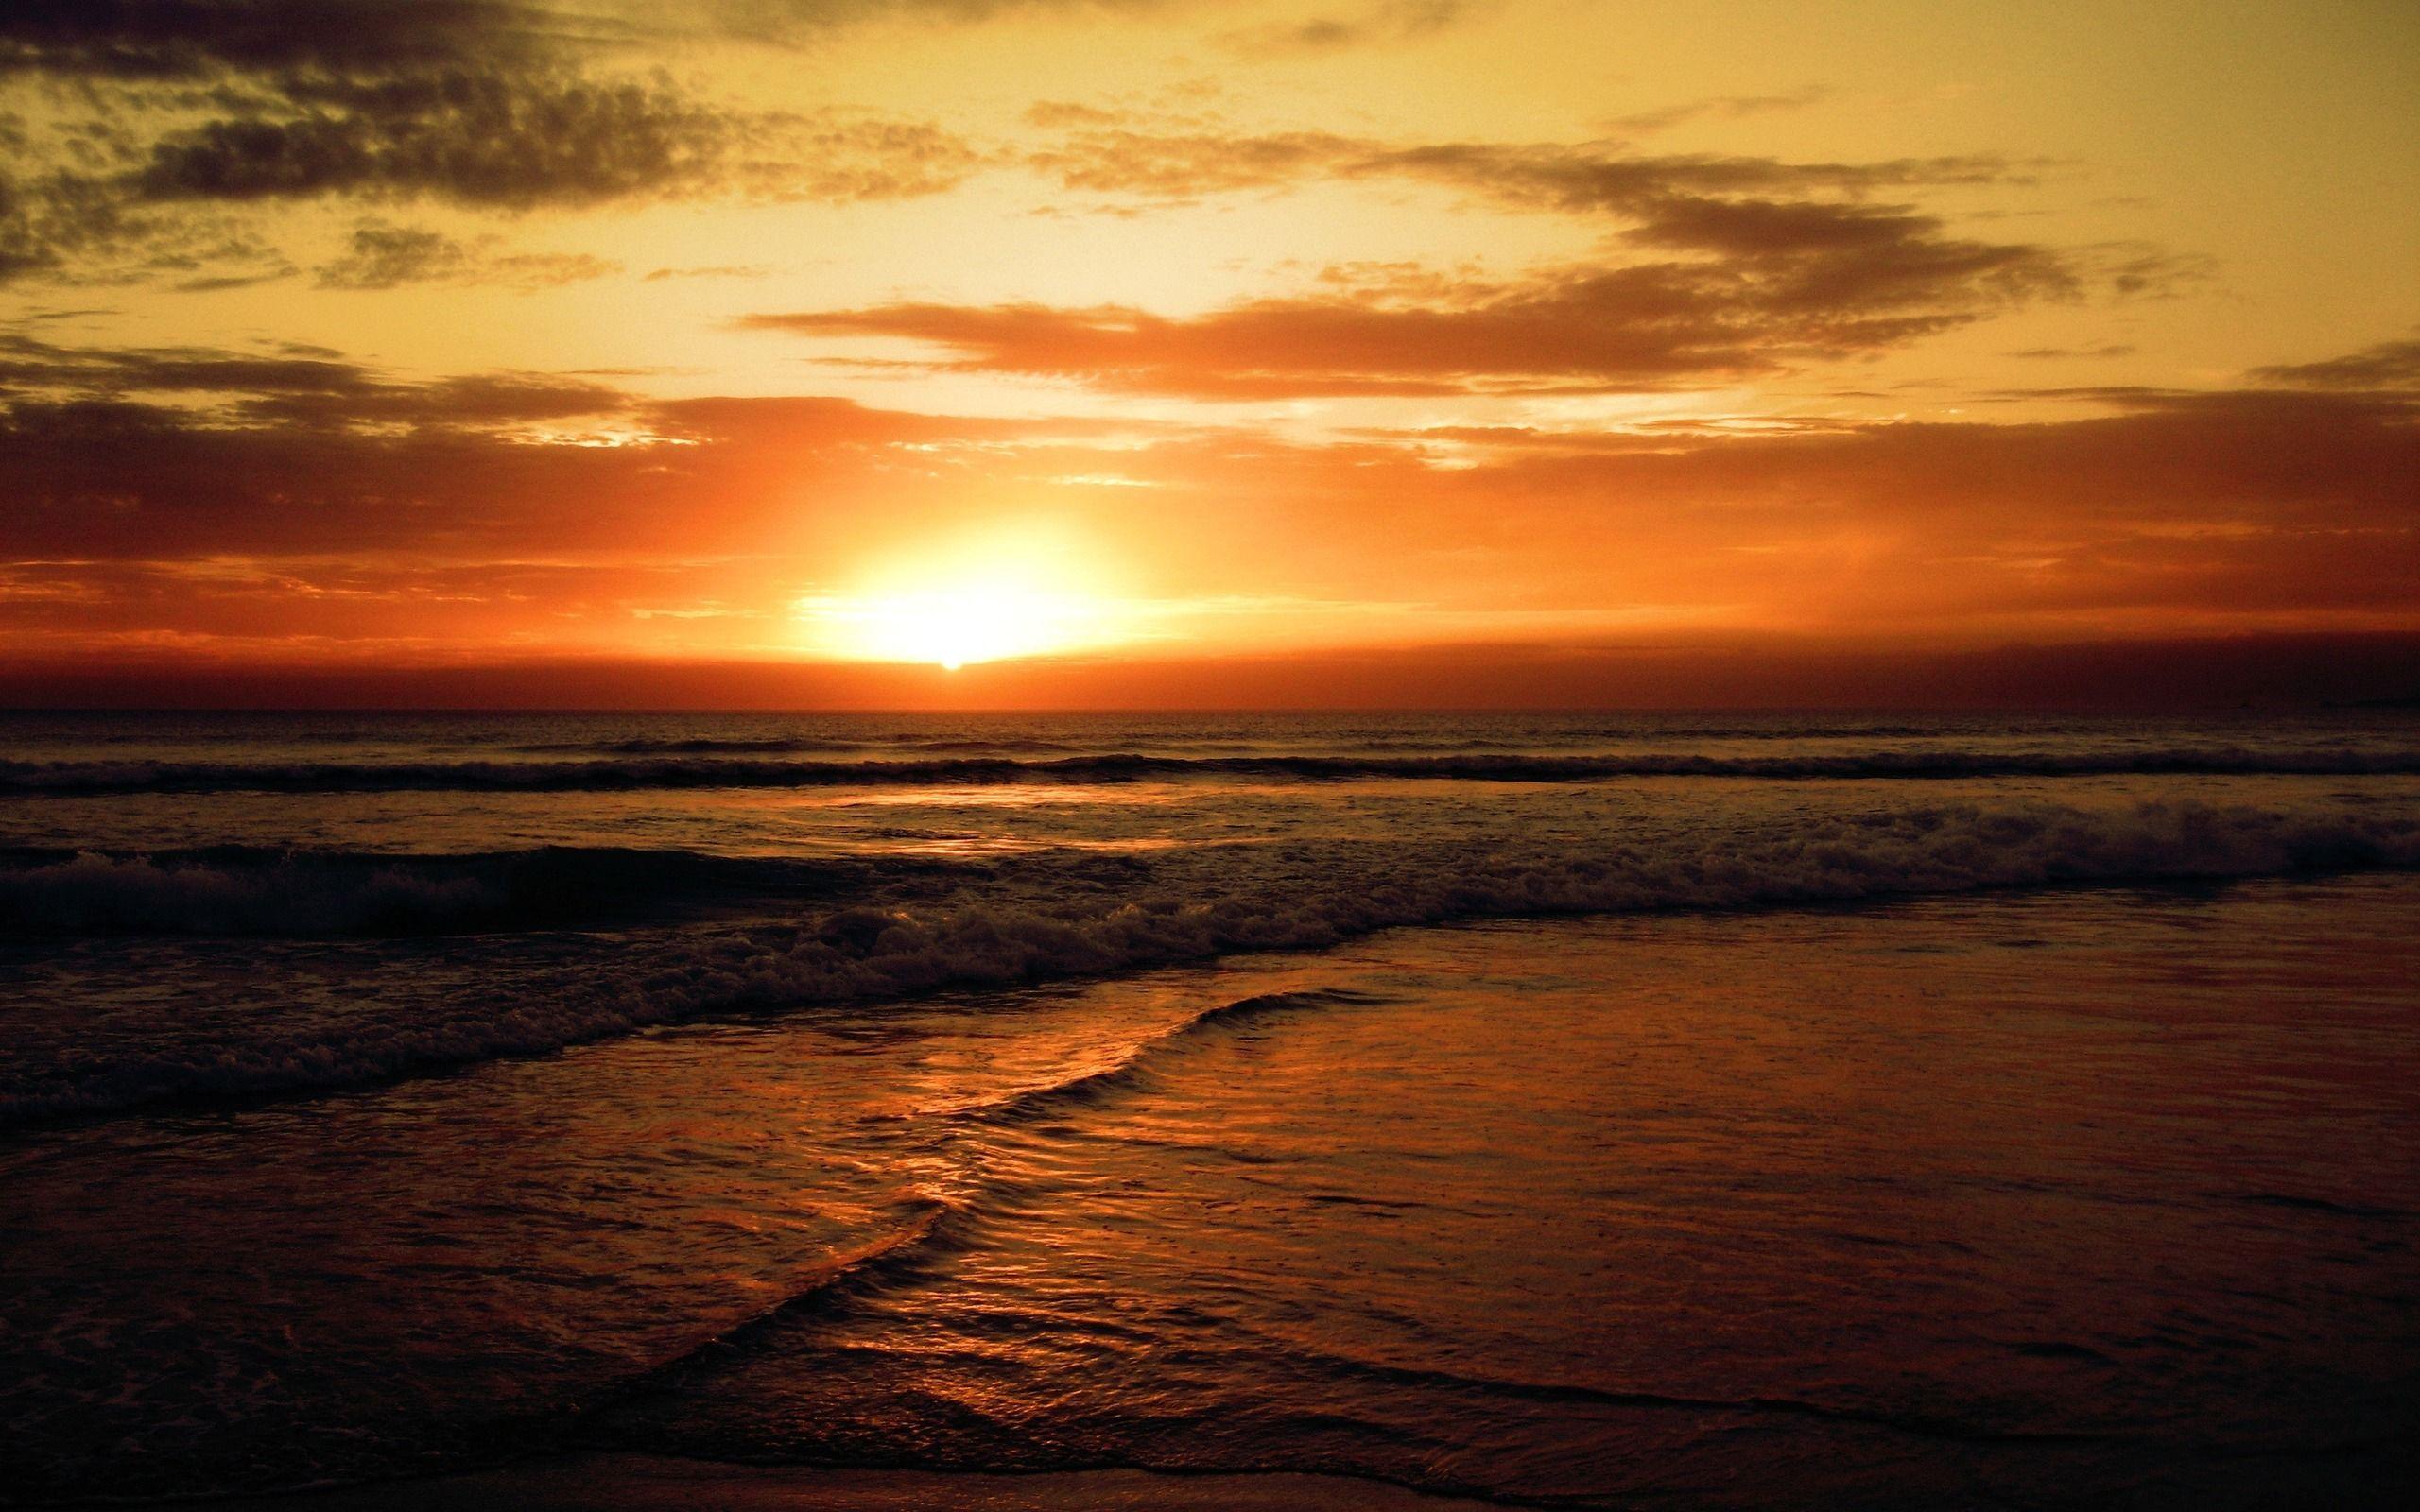 sunset beach 4 wallpaper 2048 x 1152 High Quality Picture Desktop